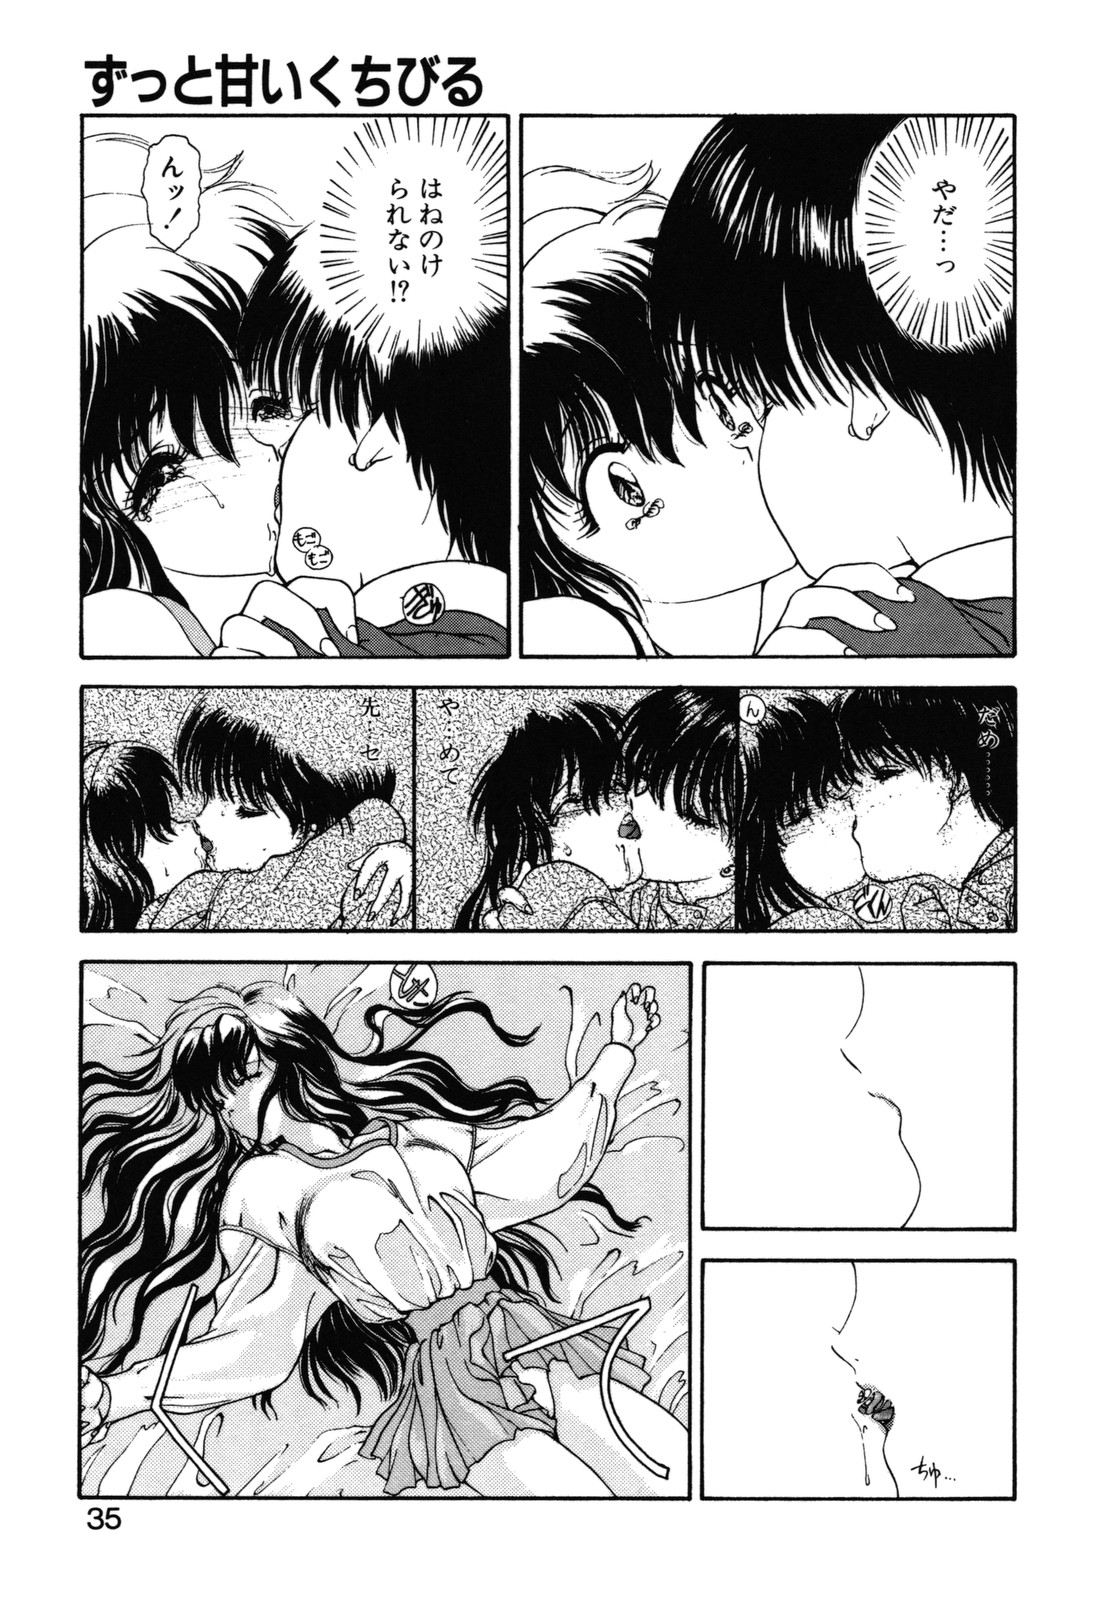 [Utatane Hiroyuki] COUNT DOWN page 36 full